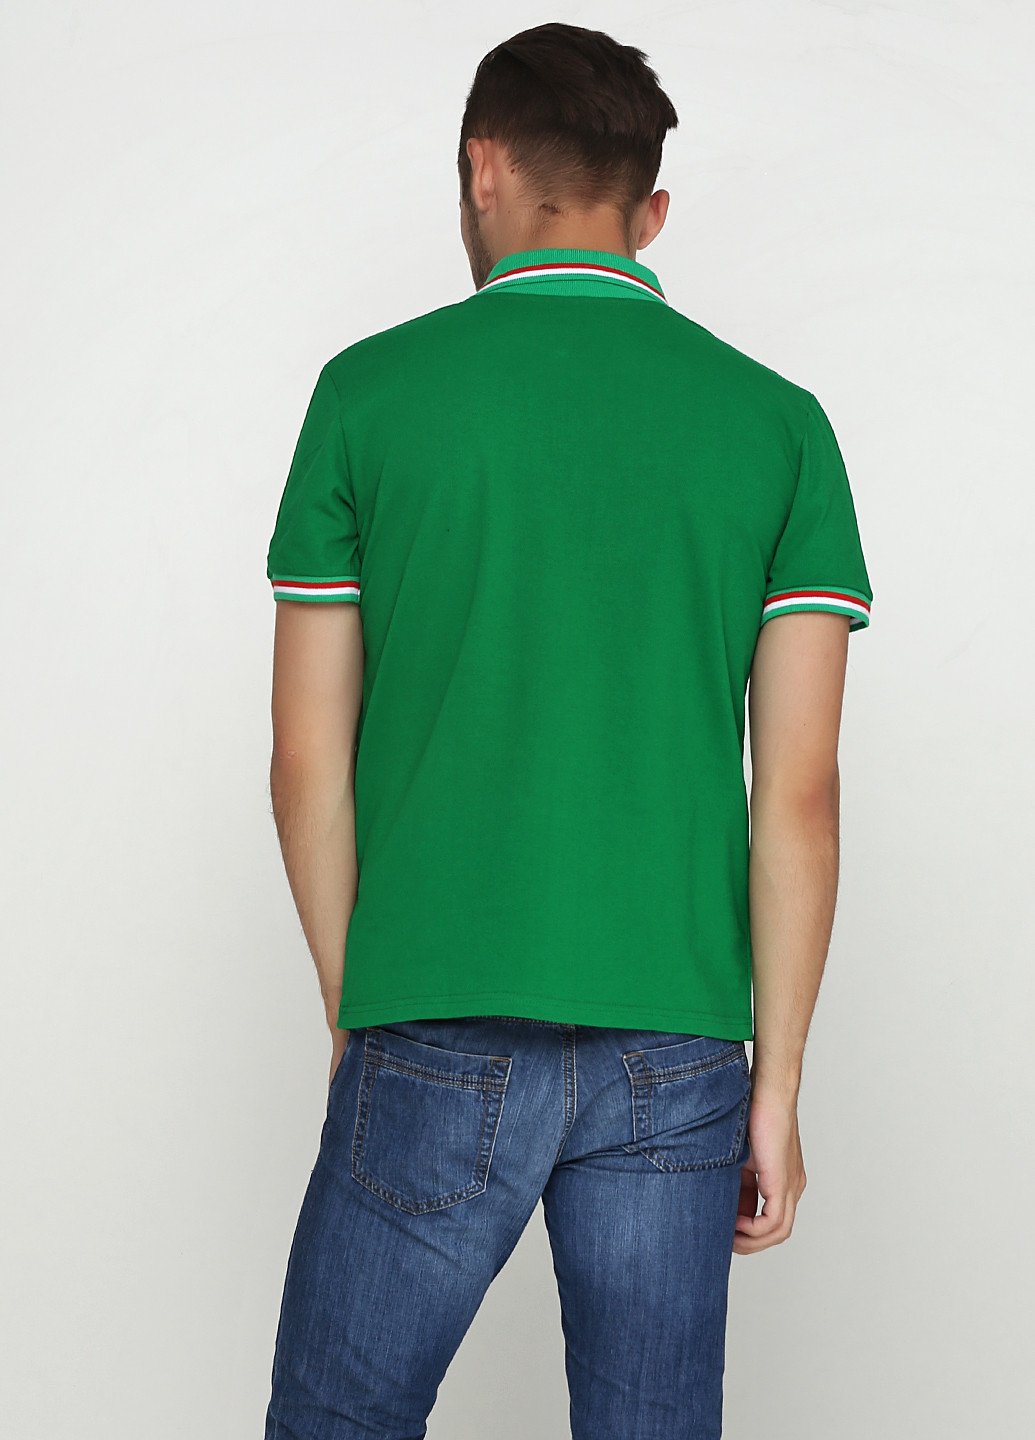 Зеленая футболка-поло для мужчин Manatki с надписью